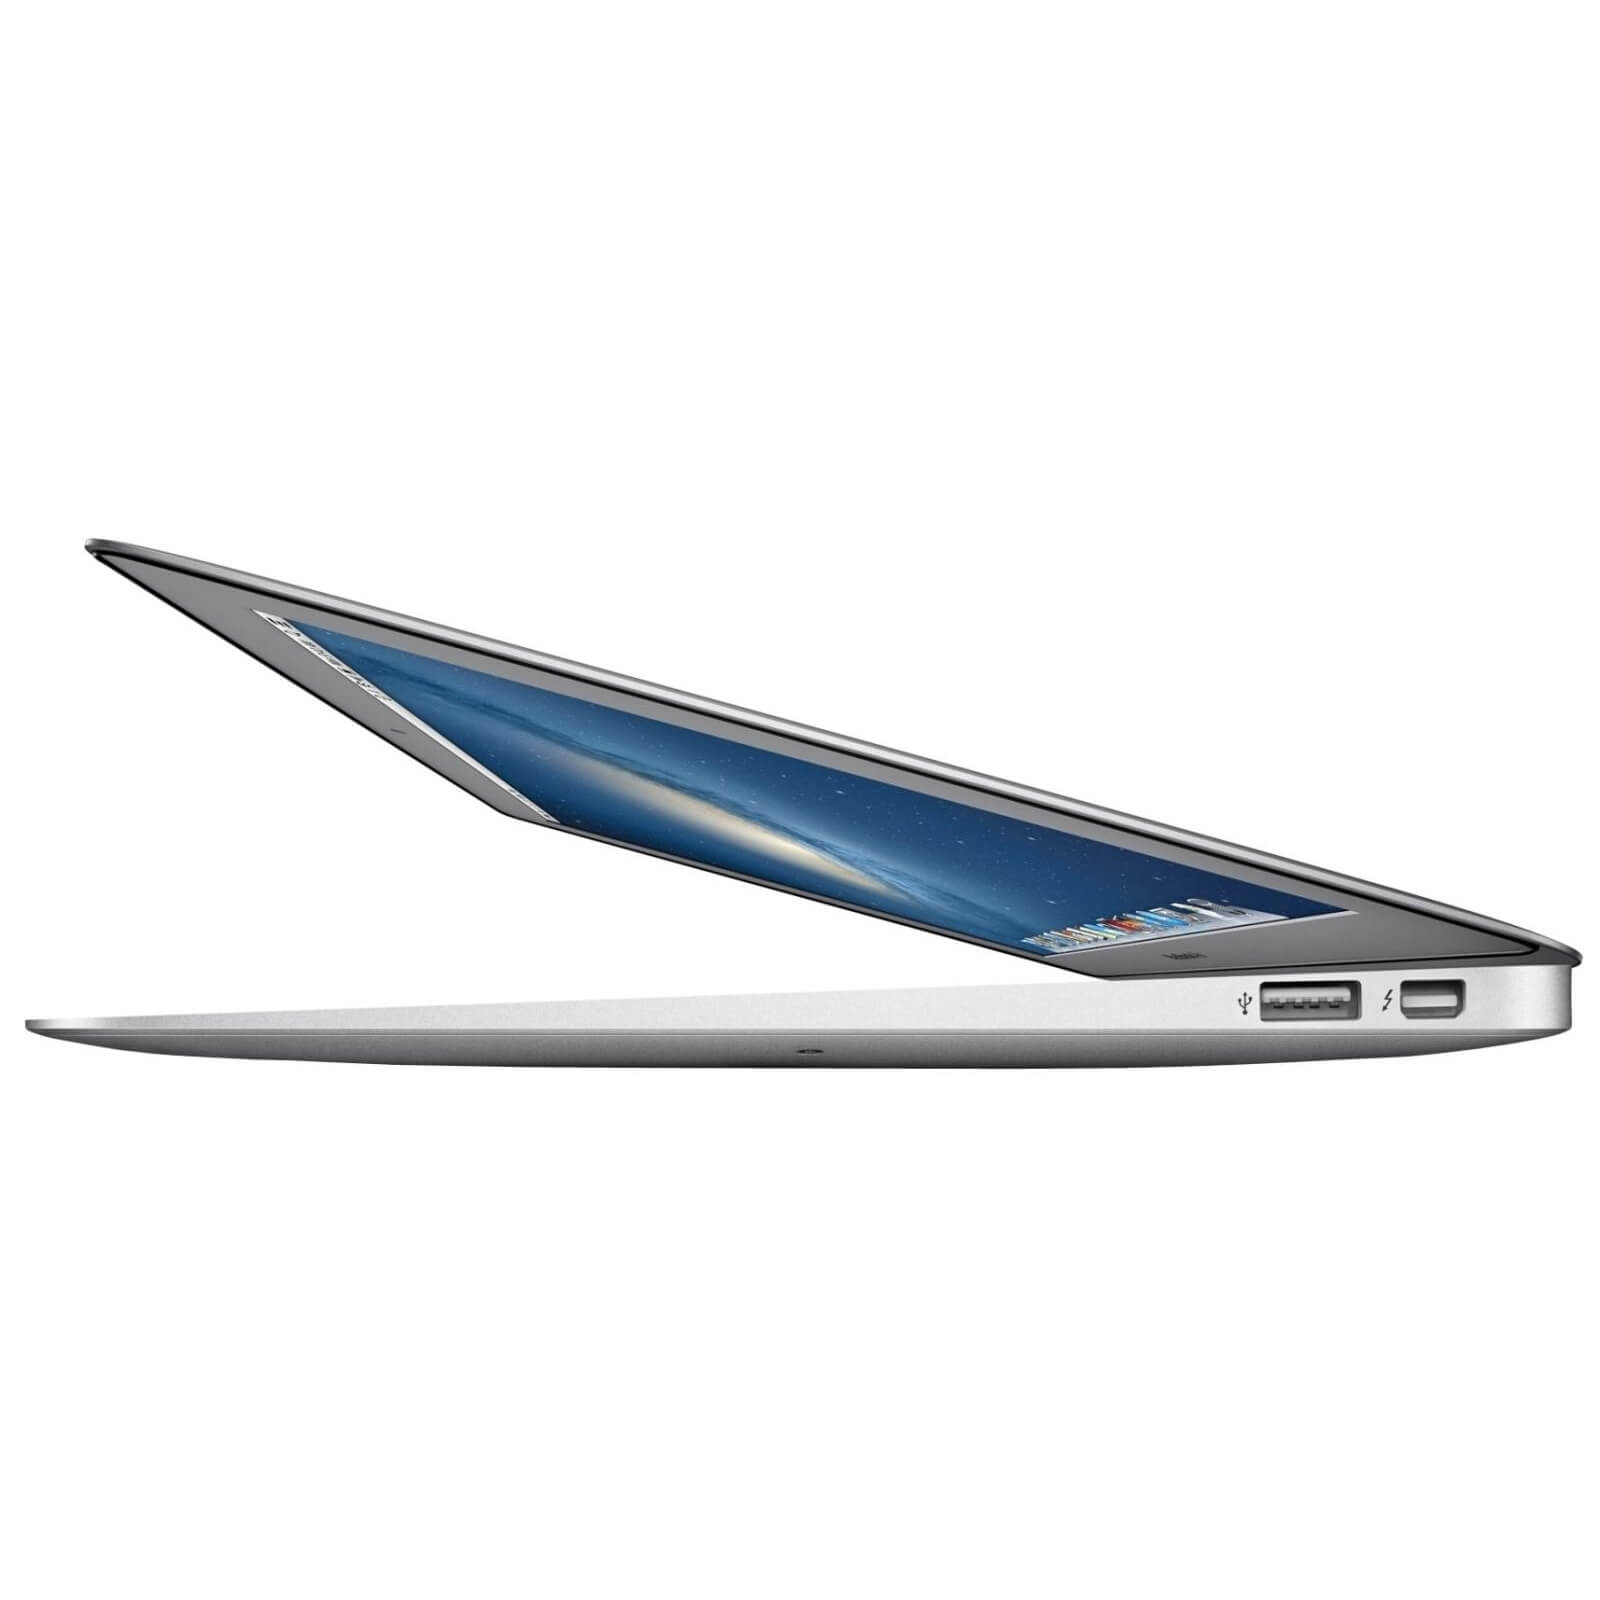 Apple Macbook Air 11 2013 (Z0NX0002S)